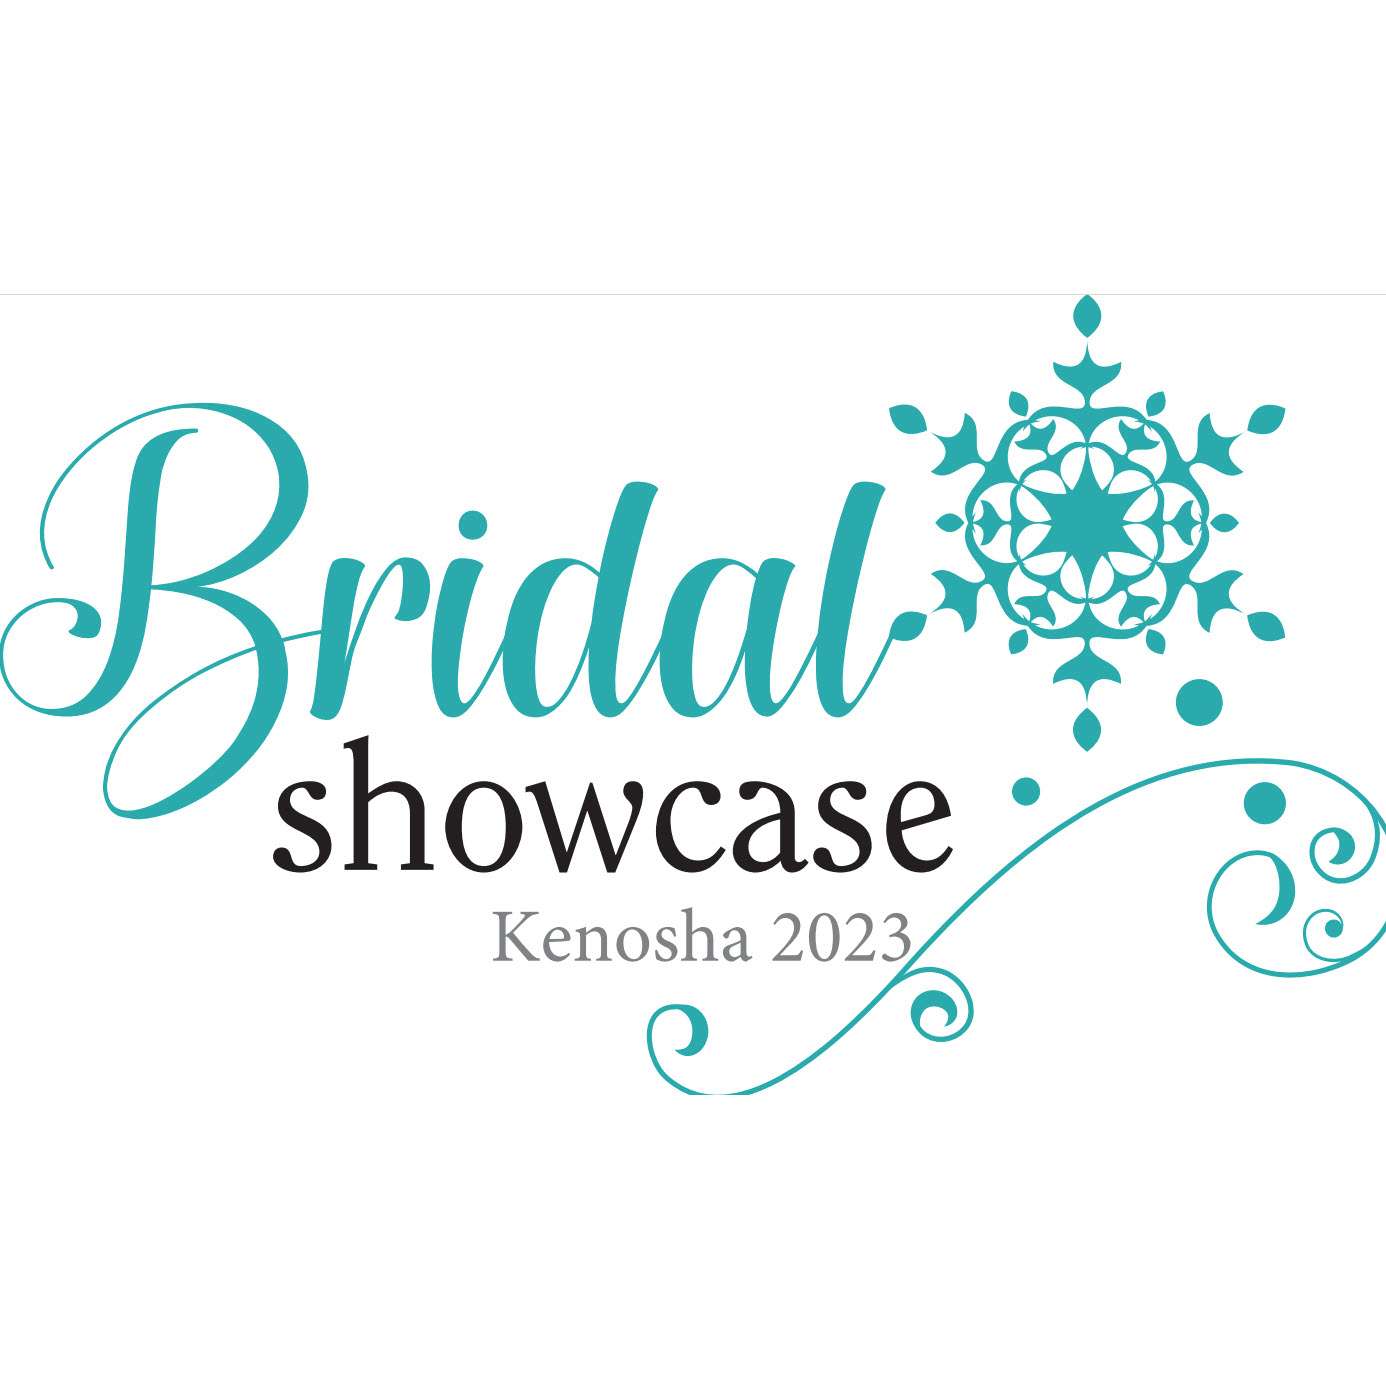 Bridal Showcase Kenosha 2023